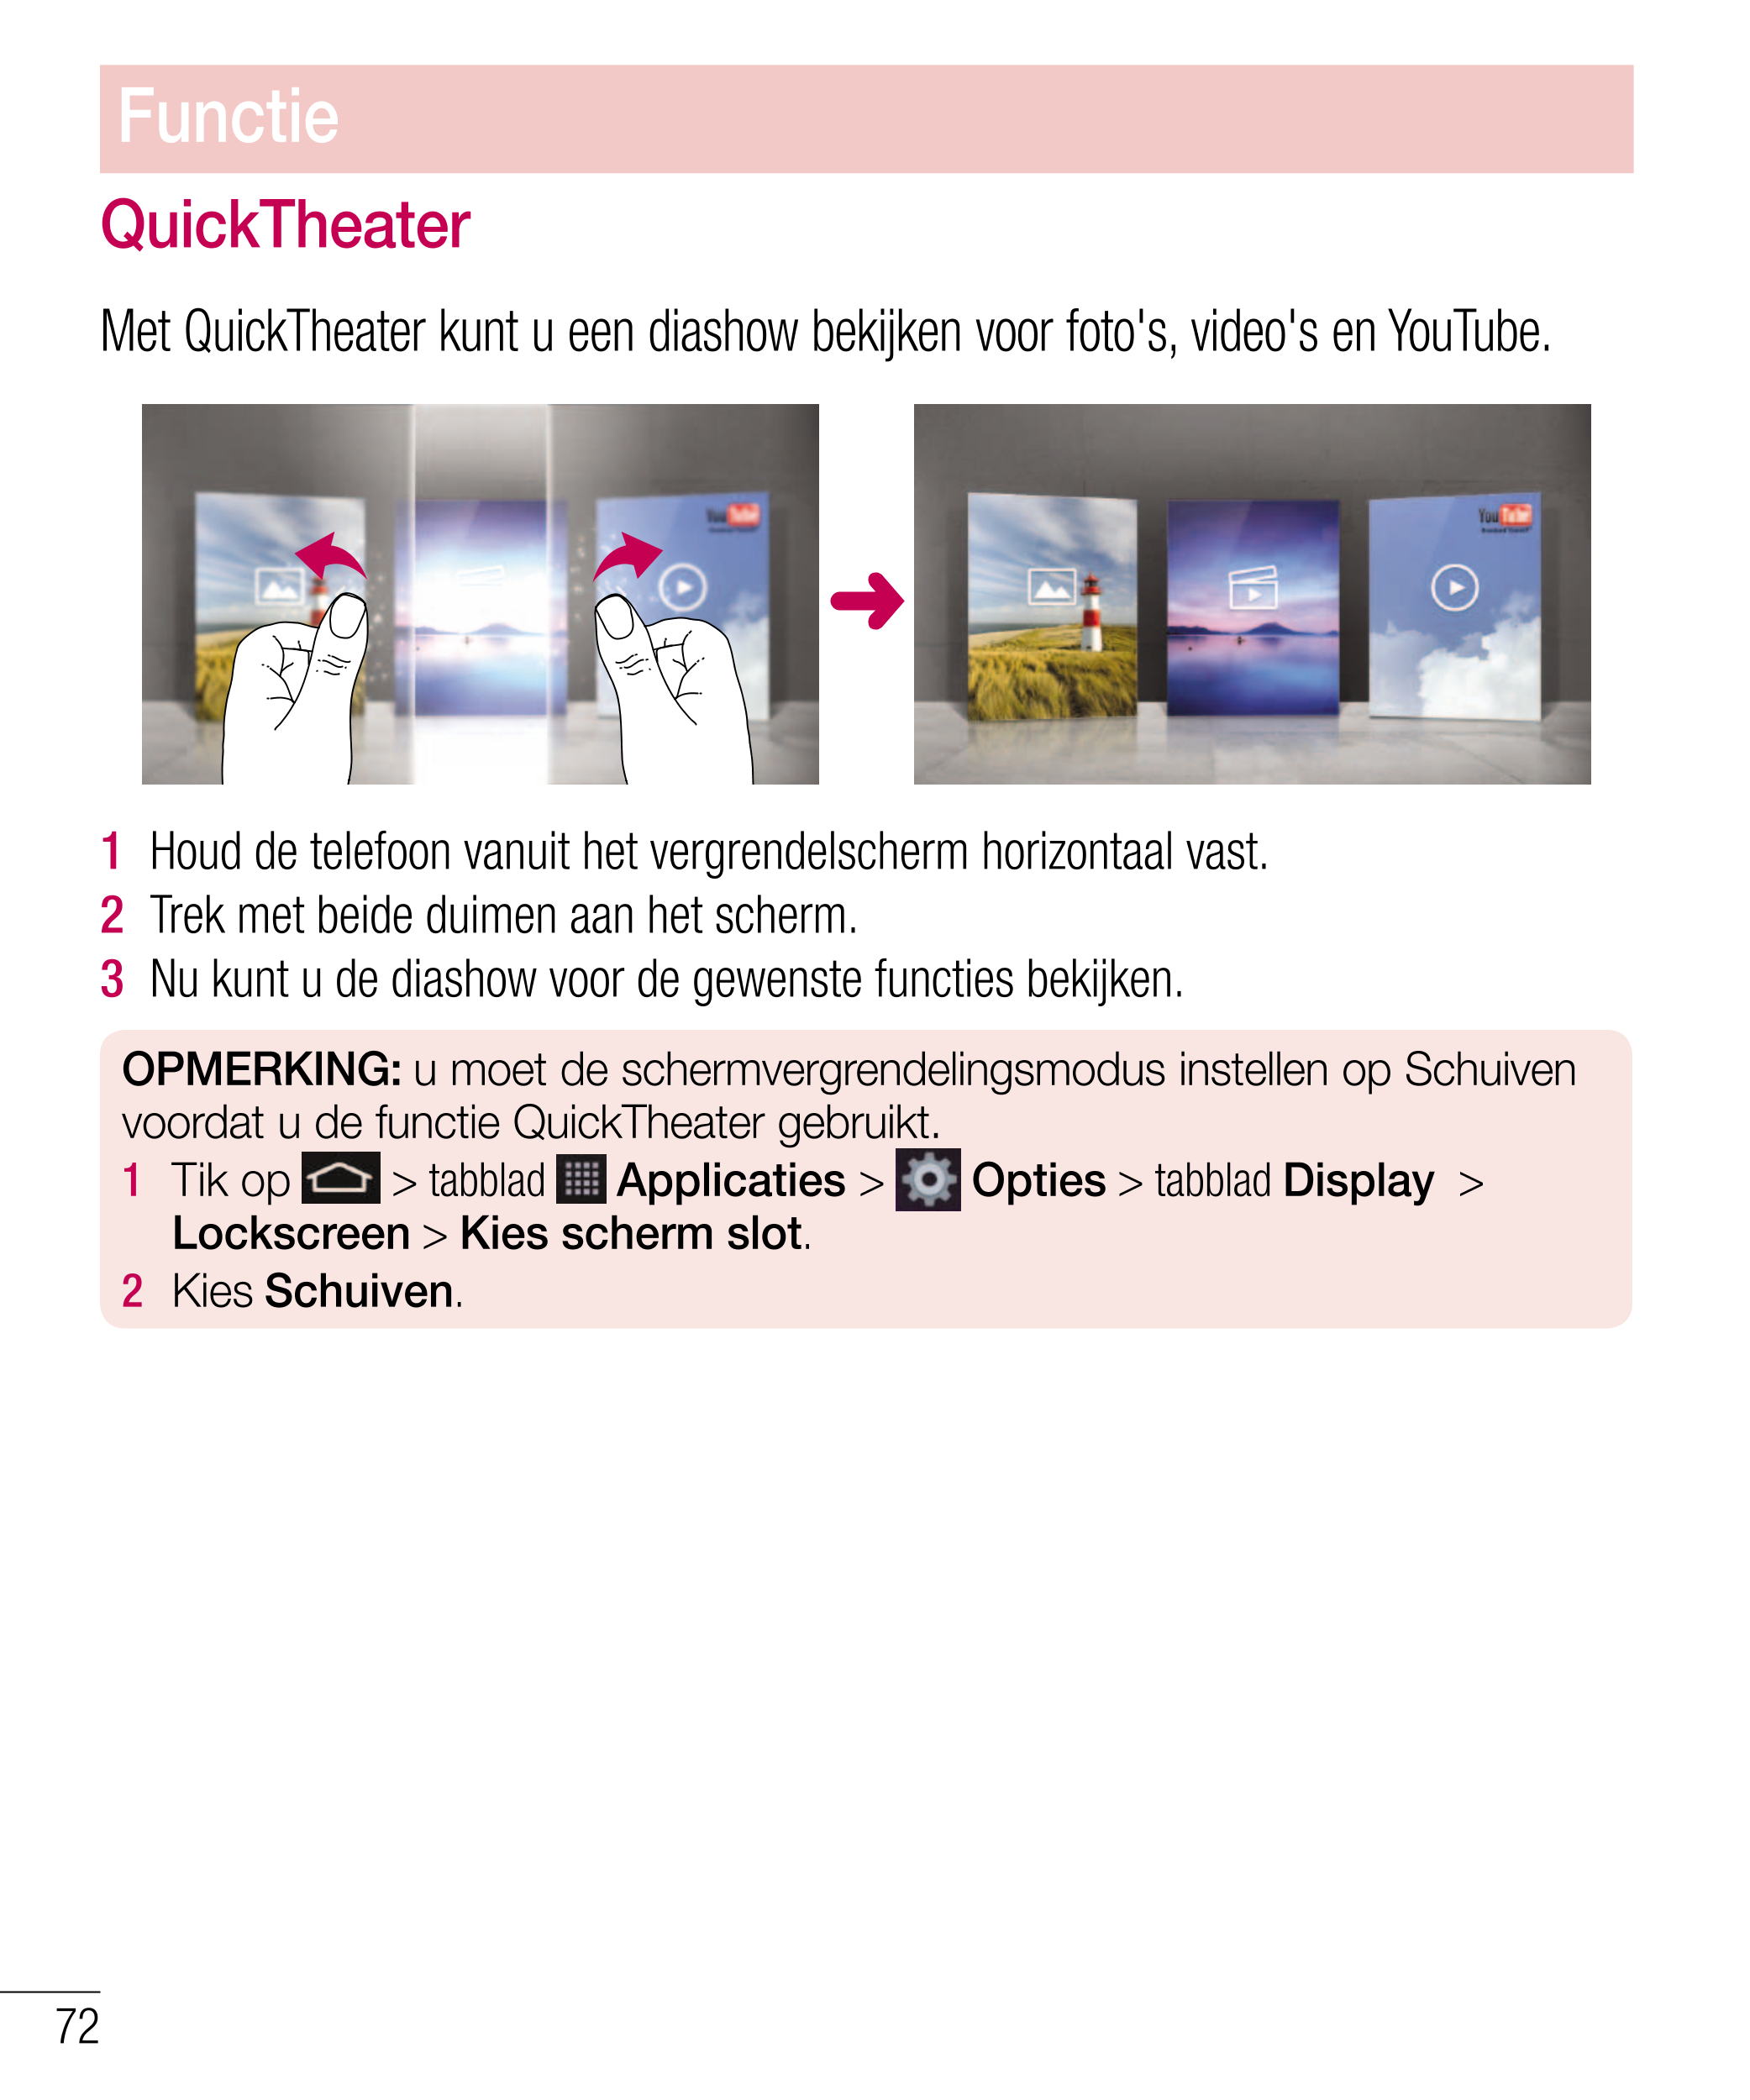 Functie
QuickTheater
Met QuickTheater kunt u een diashow bekijken voor foto's, video's en YouTube.
1    Houd de telefoon vanuit 